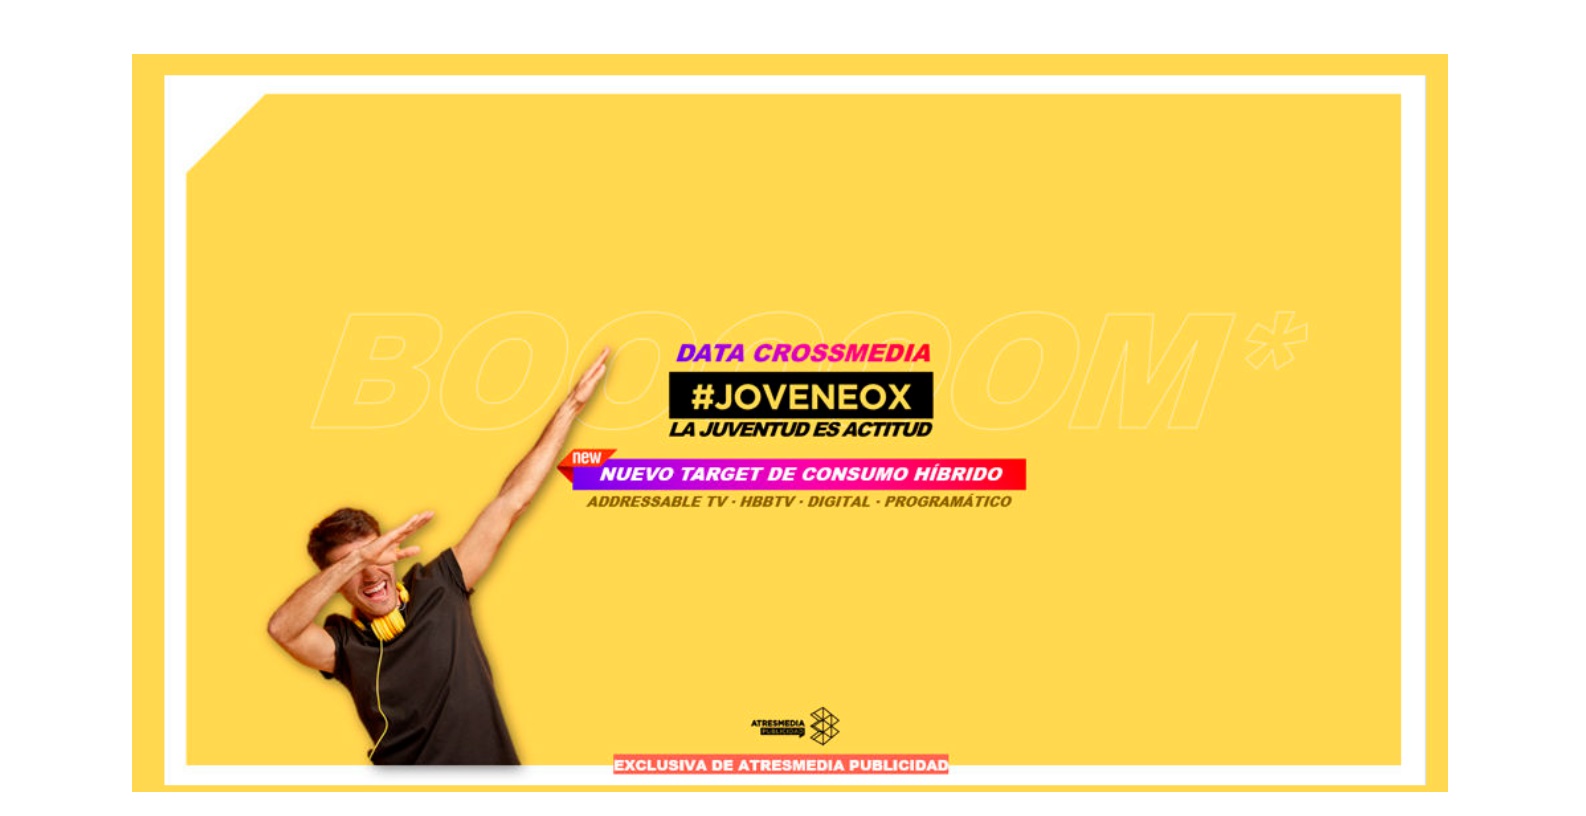 #Joveneox, ,segmento ,audiencia ,crossmedia , Atresmedia dirigido , los más jóvenes,programapublicidad